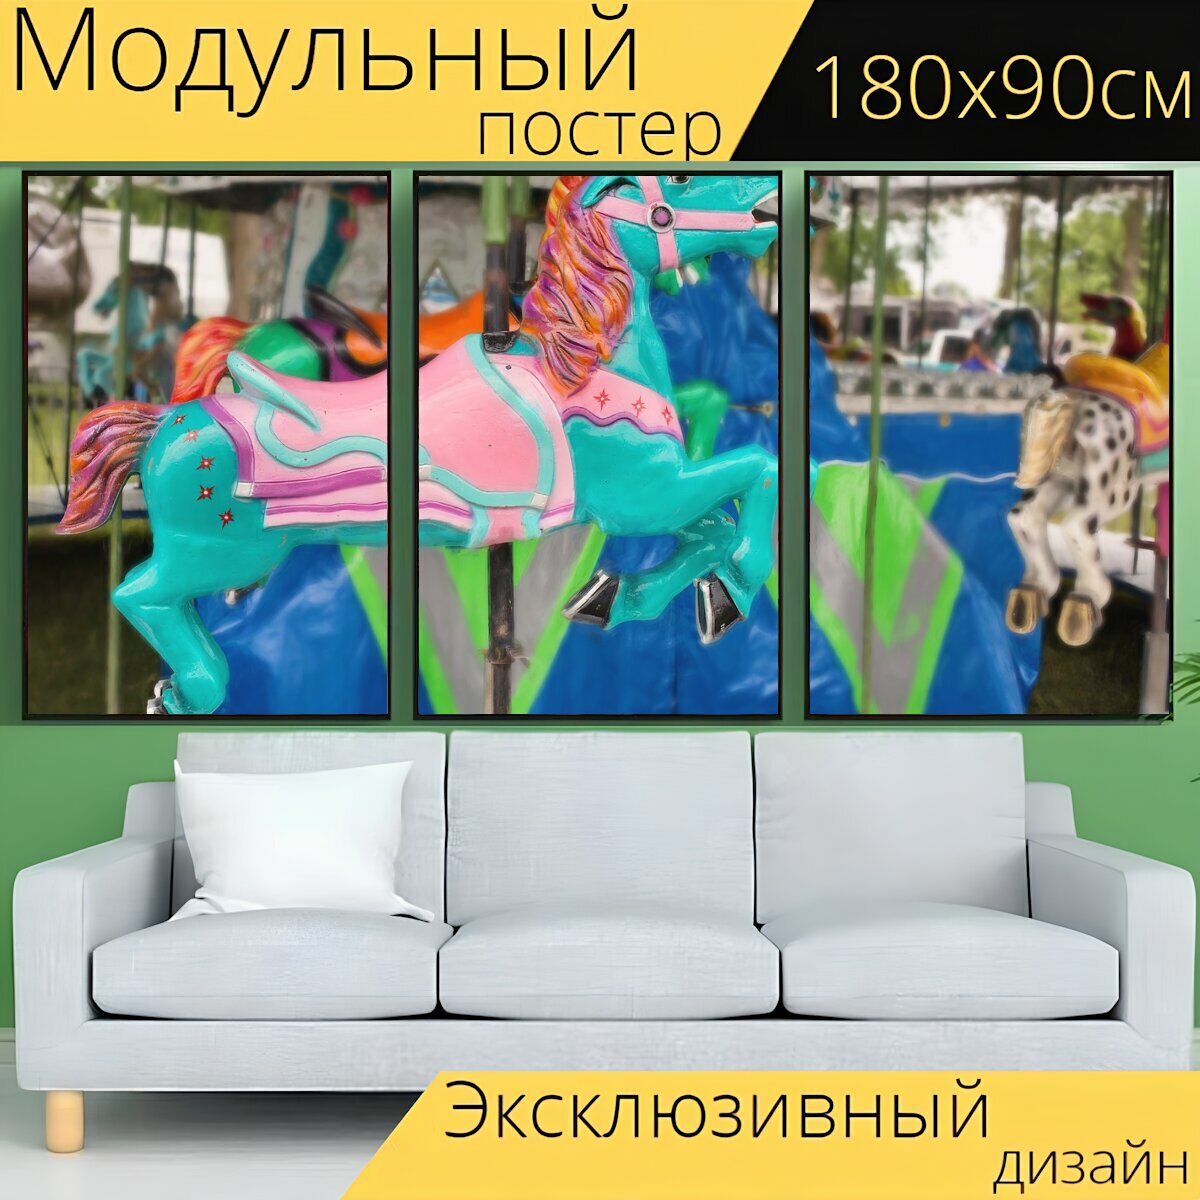 Модульный постер "Карусели лошадь, карусель, развлечение" 180 x 90 см. для интерьера